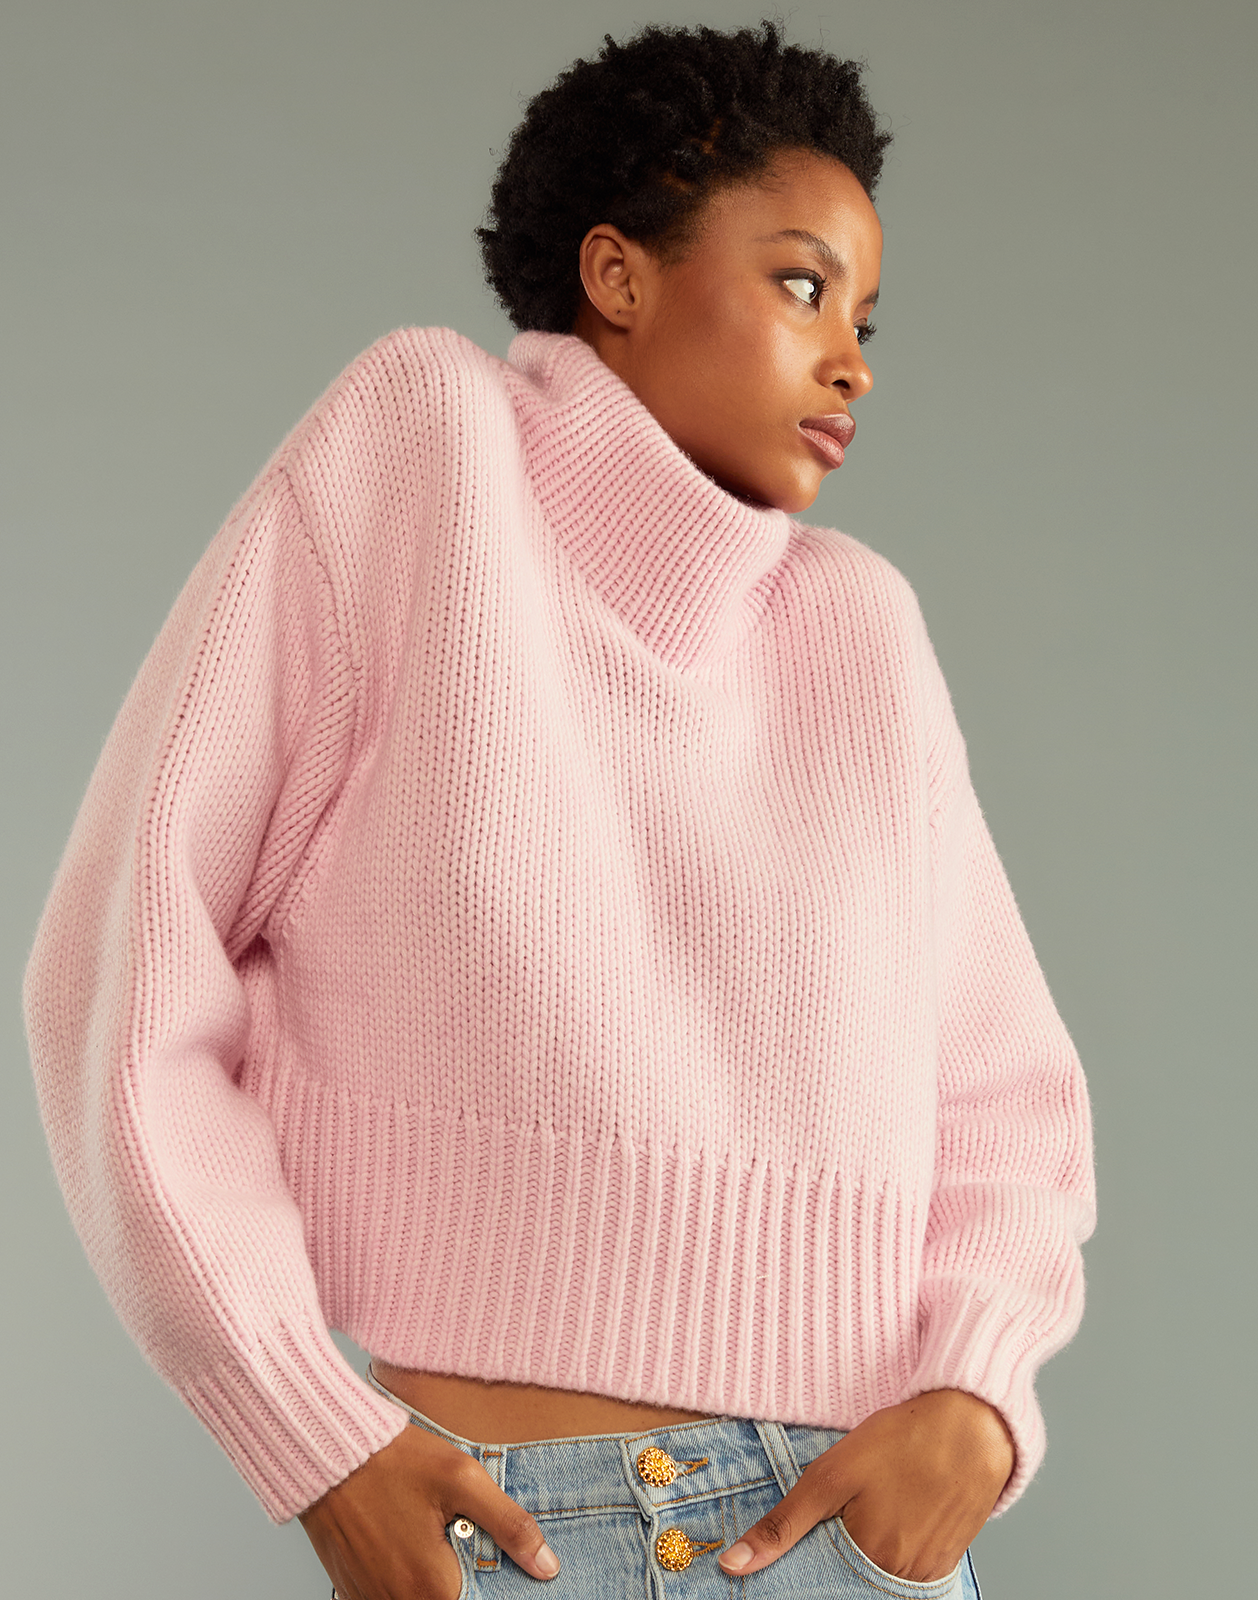 Plush Wool Sweater – Cynthia Rowley